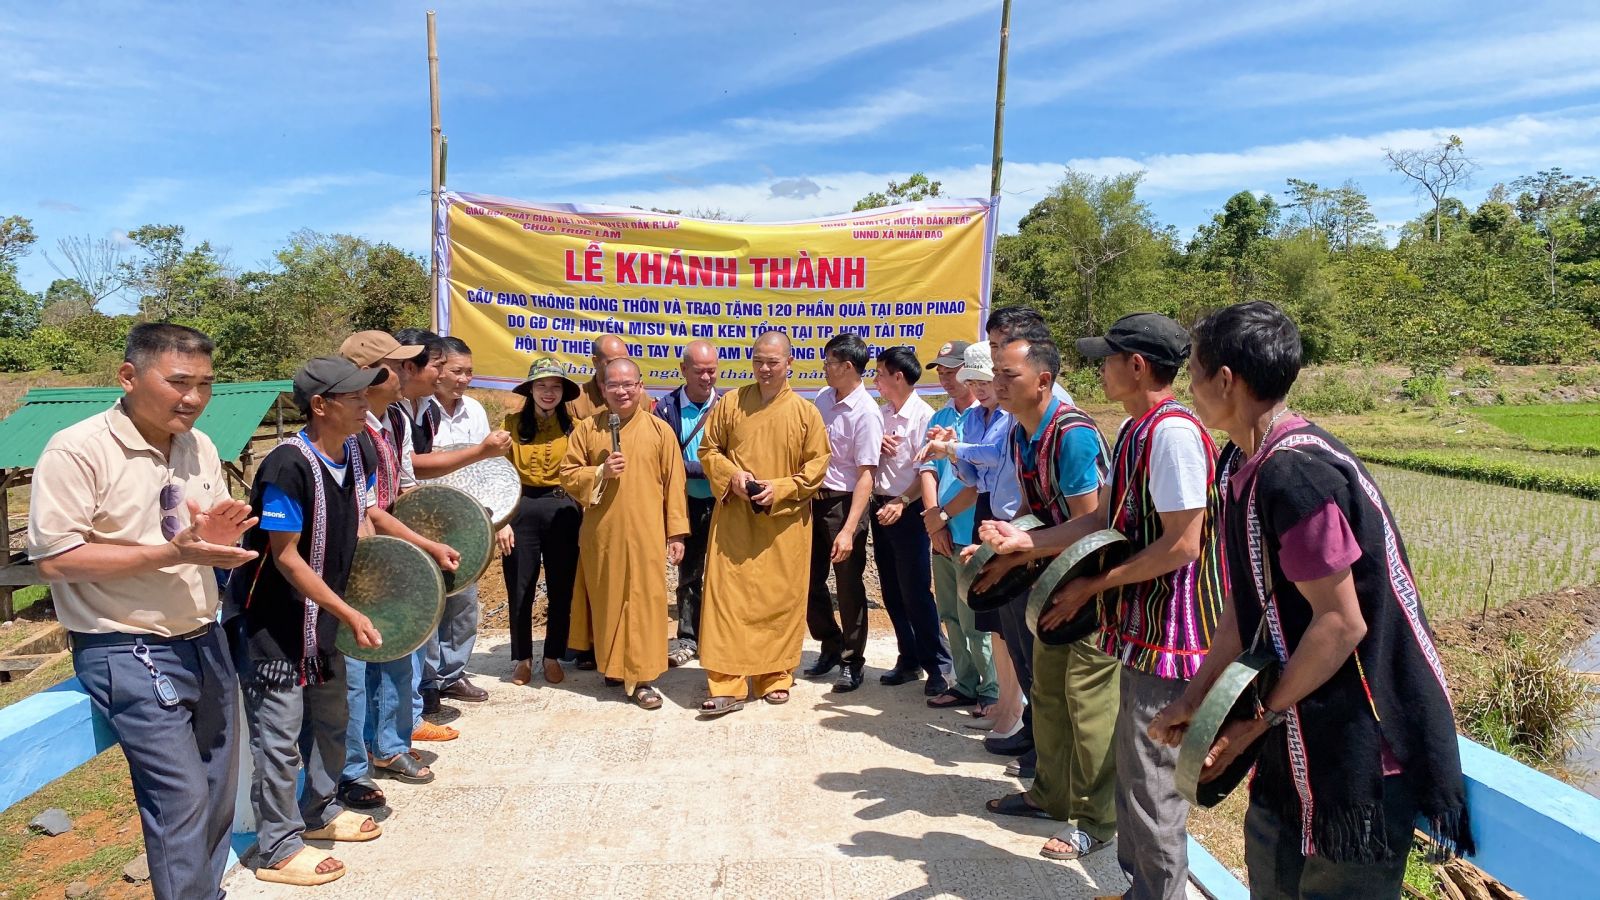 Huyện Đắk R'Lấp: Chùa Trúc Lâm trao tặng cây cầu giao thông nông thôn tại xã Nhân Đạo.